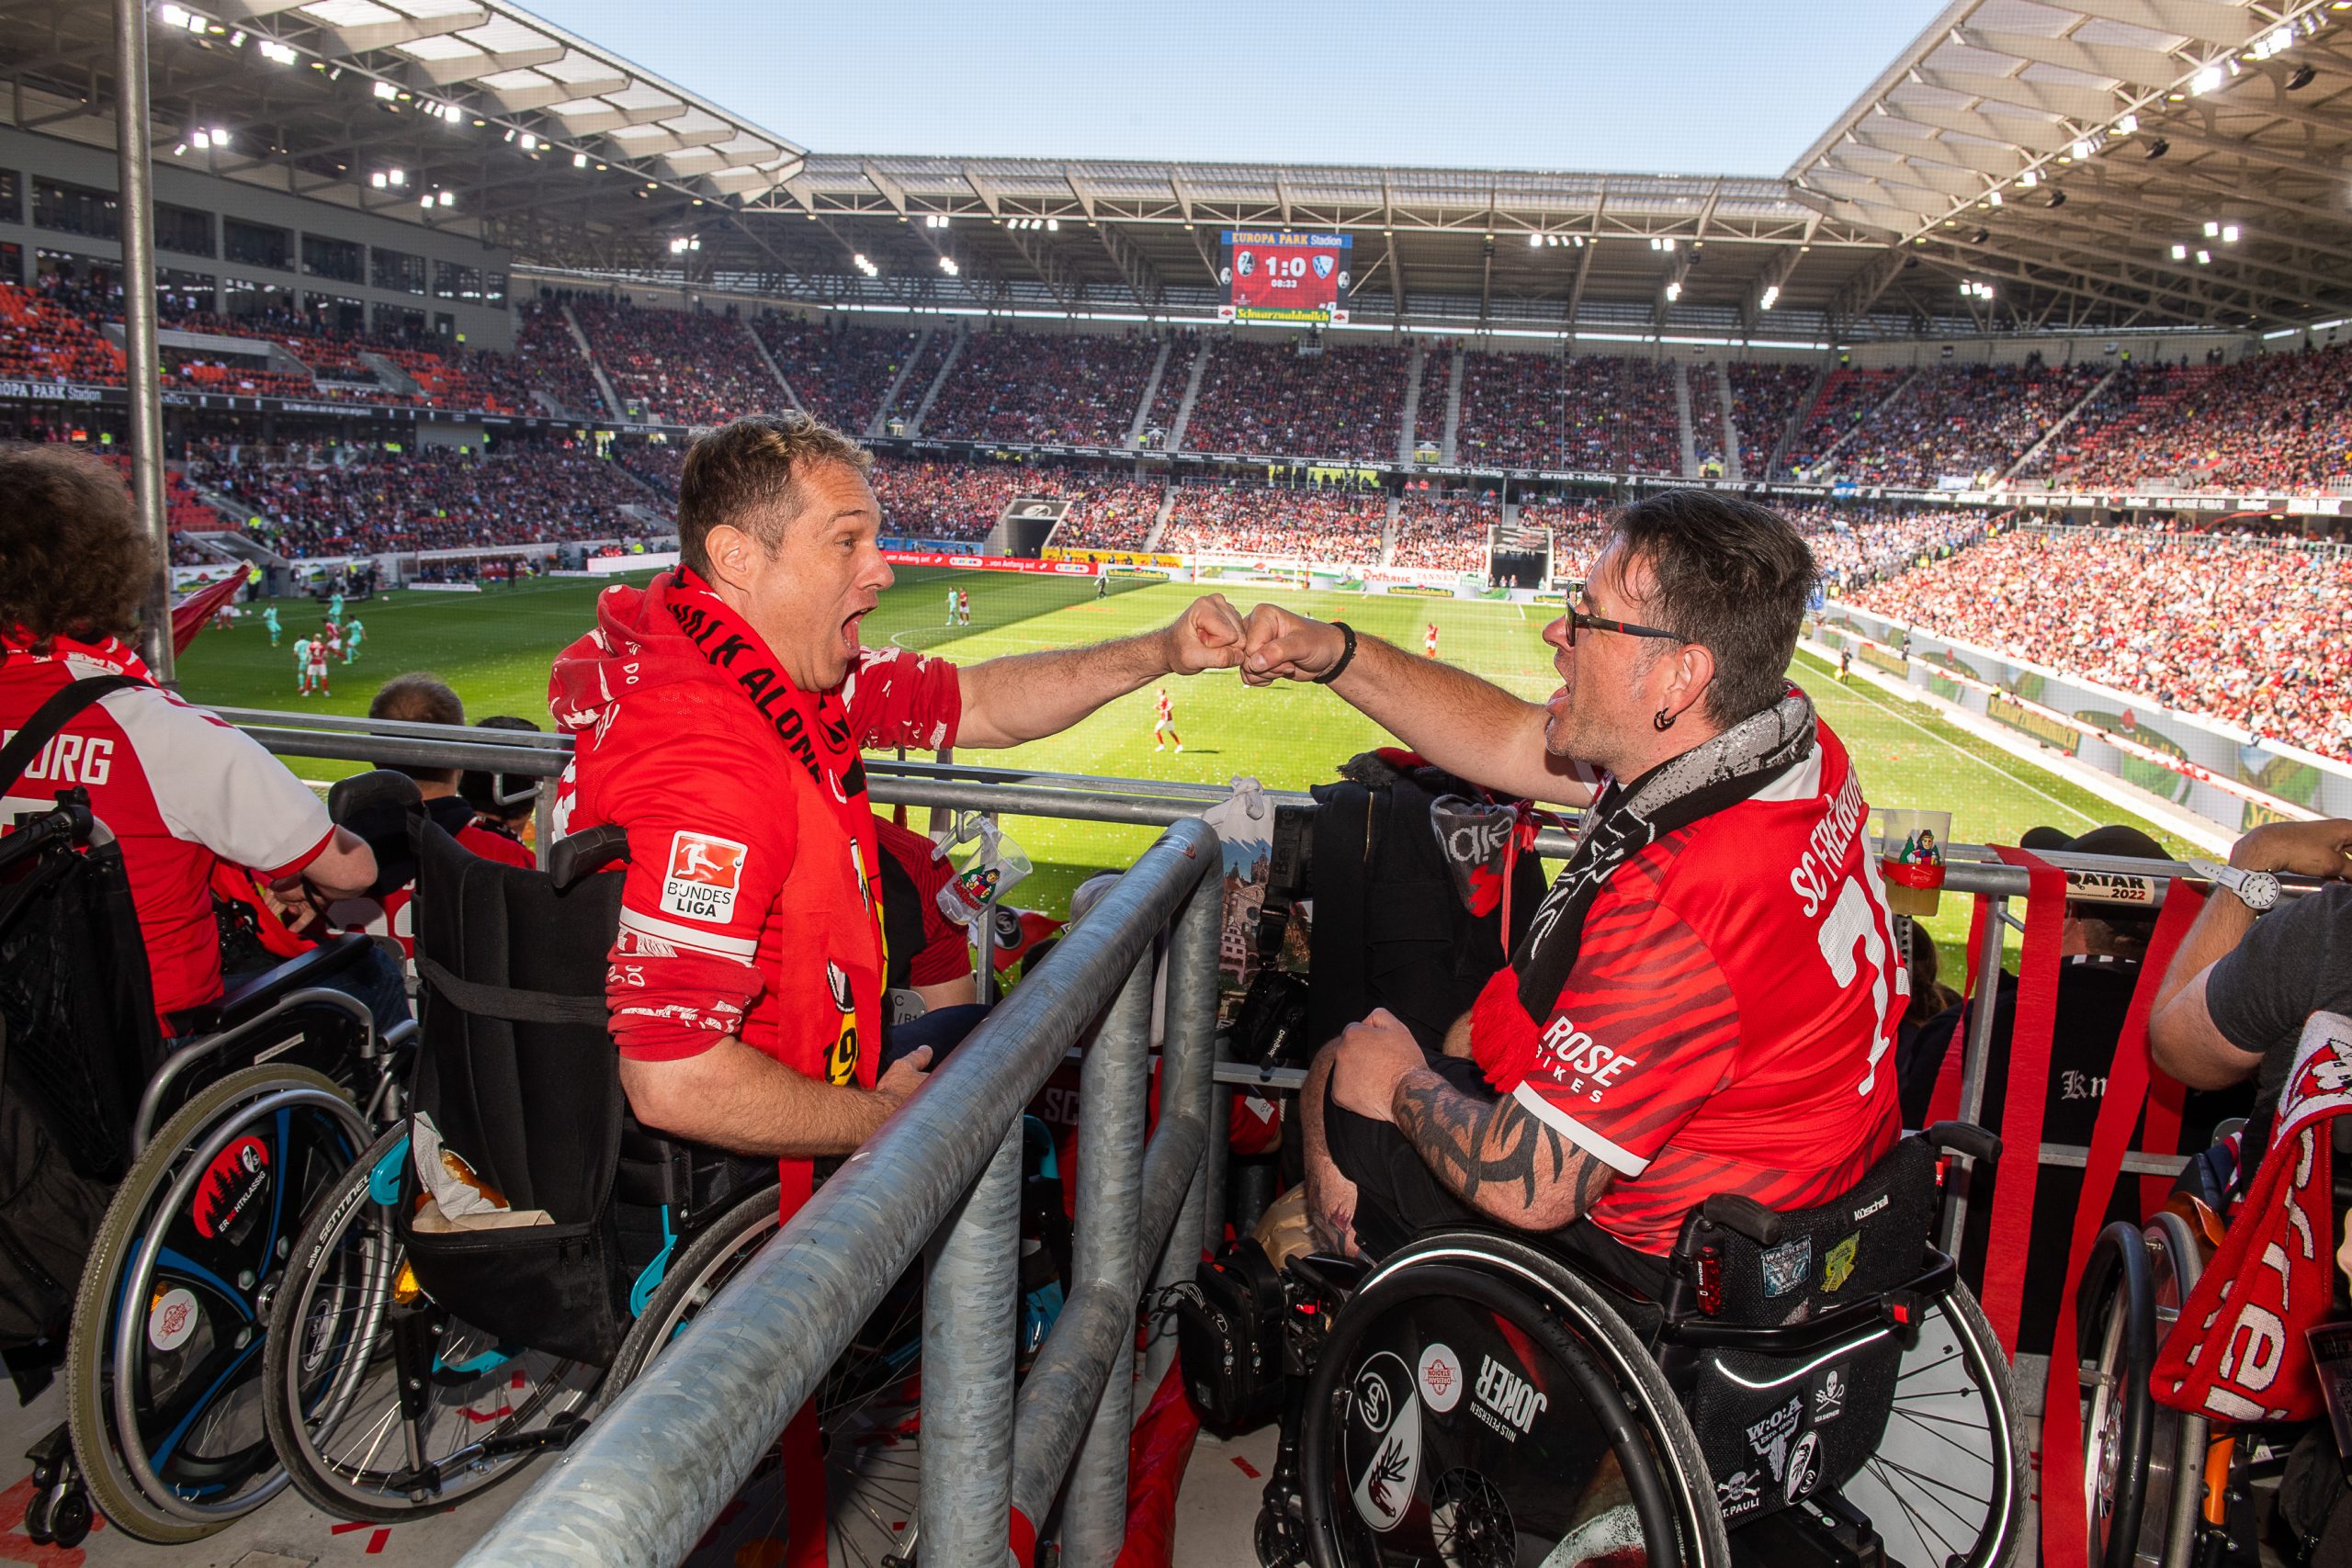 Zwei im Rollstuhlsitzende und Trikottragende SC-Fans. Beide befinden sich im neuen SC Stadion auf der Tribüne. Im Hintergrund der Spielfeld und die gegenüberliegende Tribüne zu erkennen.